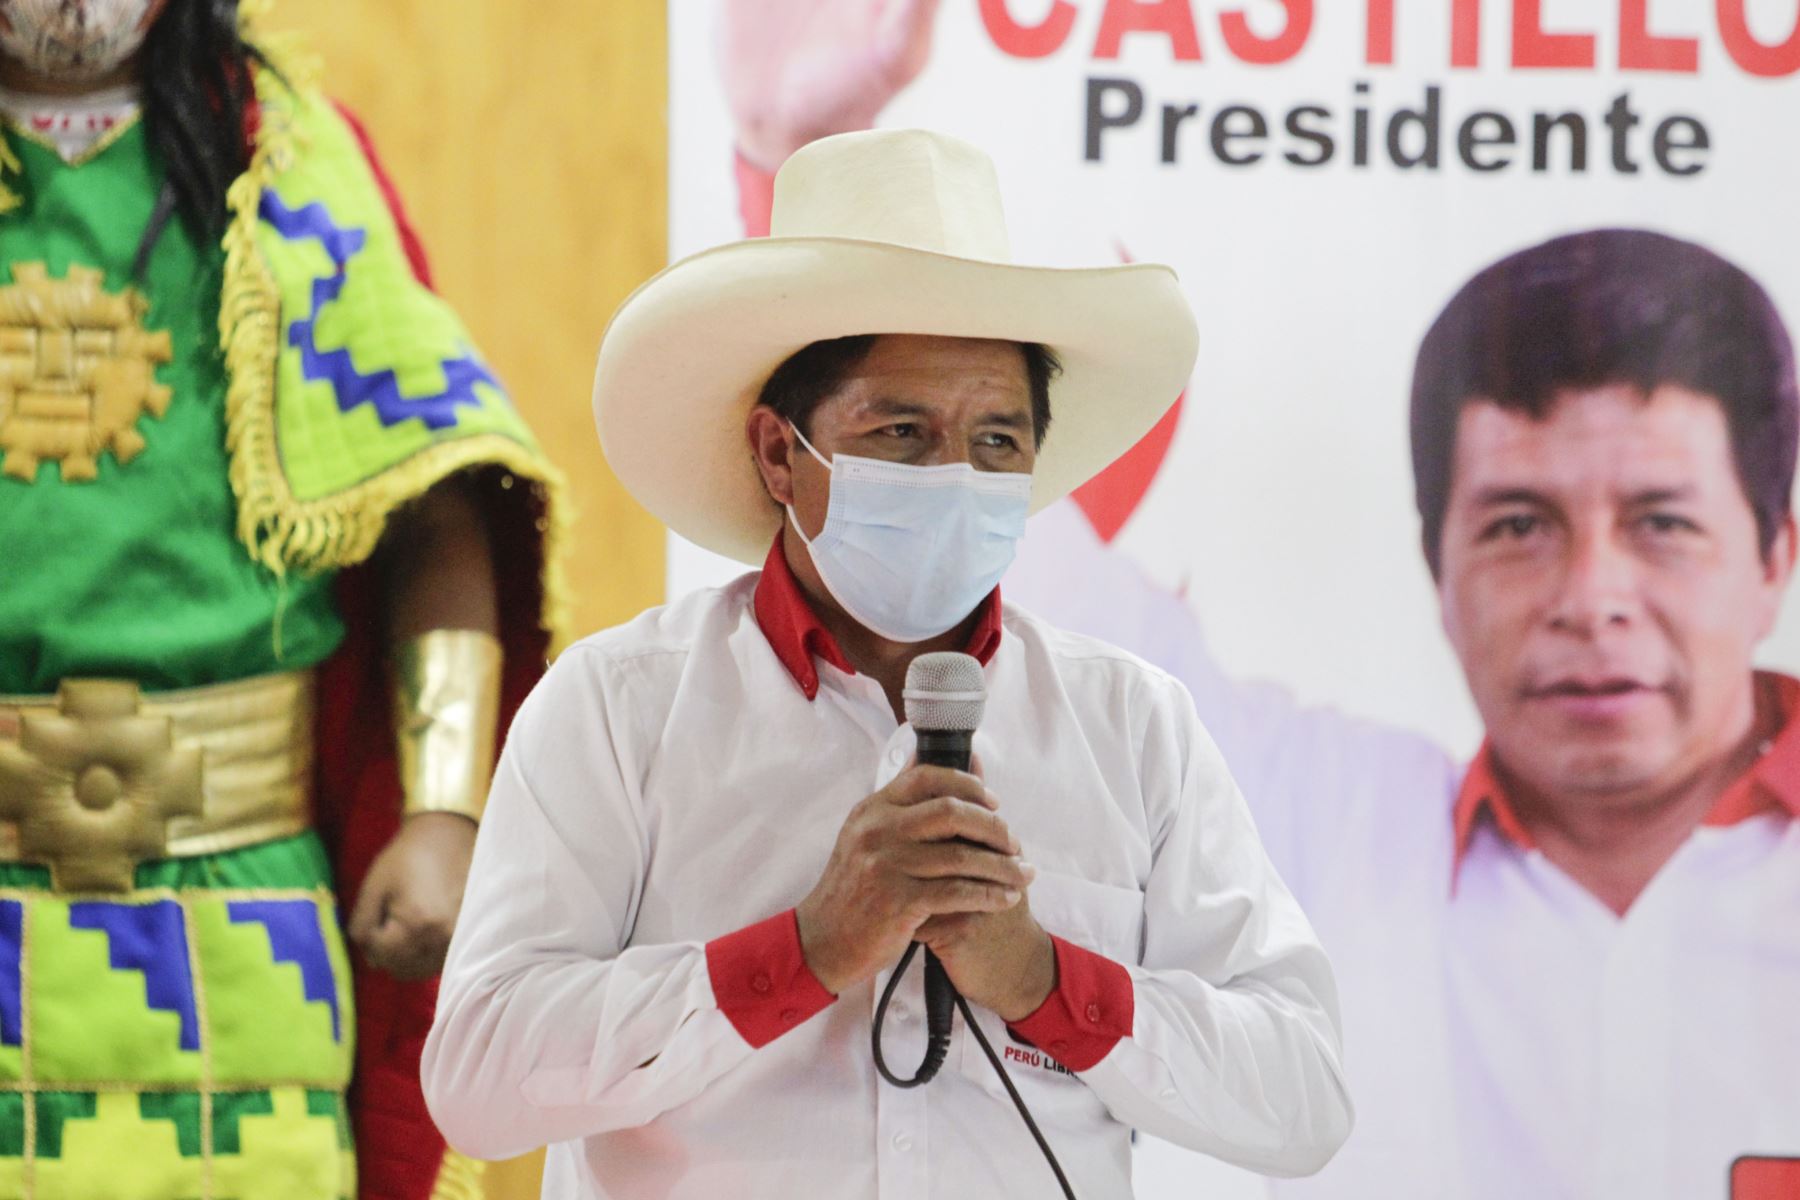 En conferencia de prensa el candidato de Perú Libre, Pedro Castillo suscribe compromiso con Verónica Mendoza de Juntos por el Perú con miras a la 2da vuelta electoral.
Foto: ANDINA/Renato Pajuelo